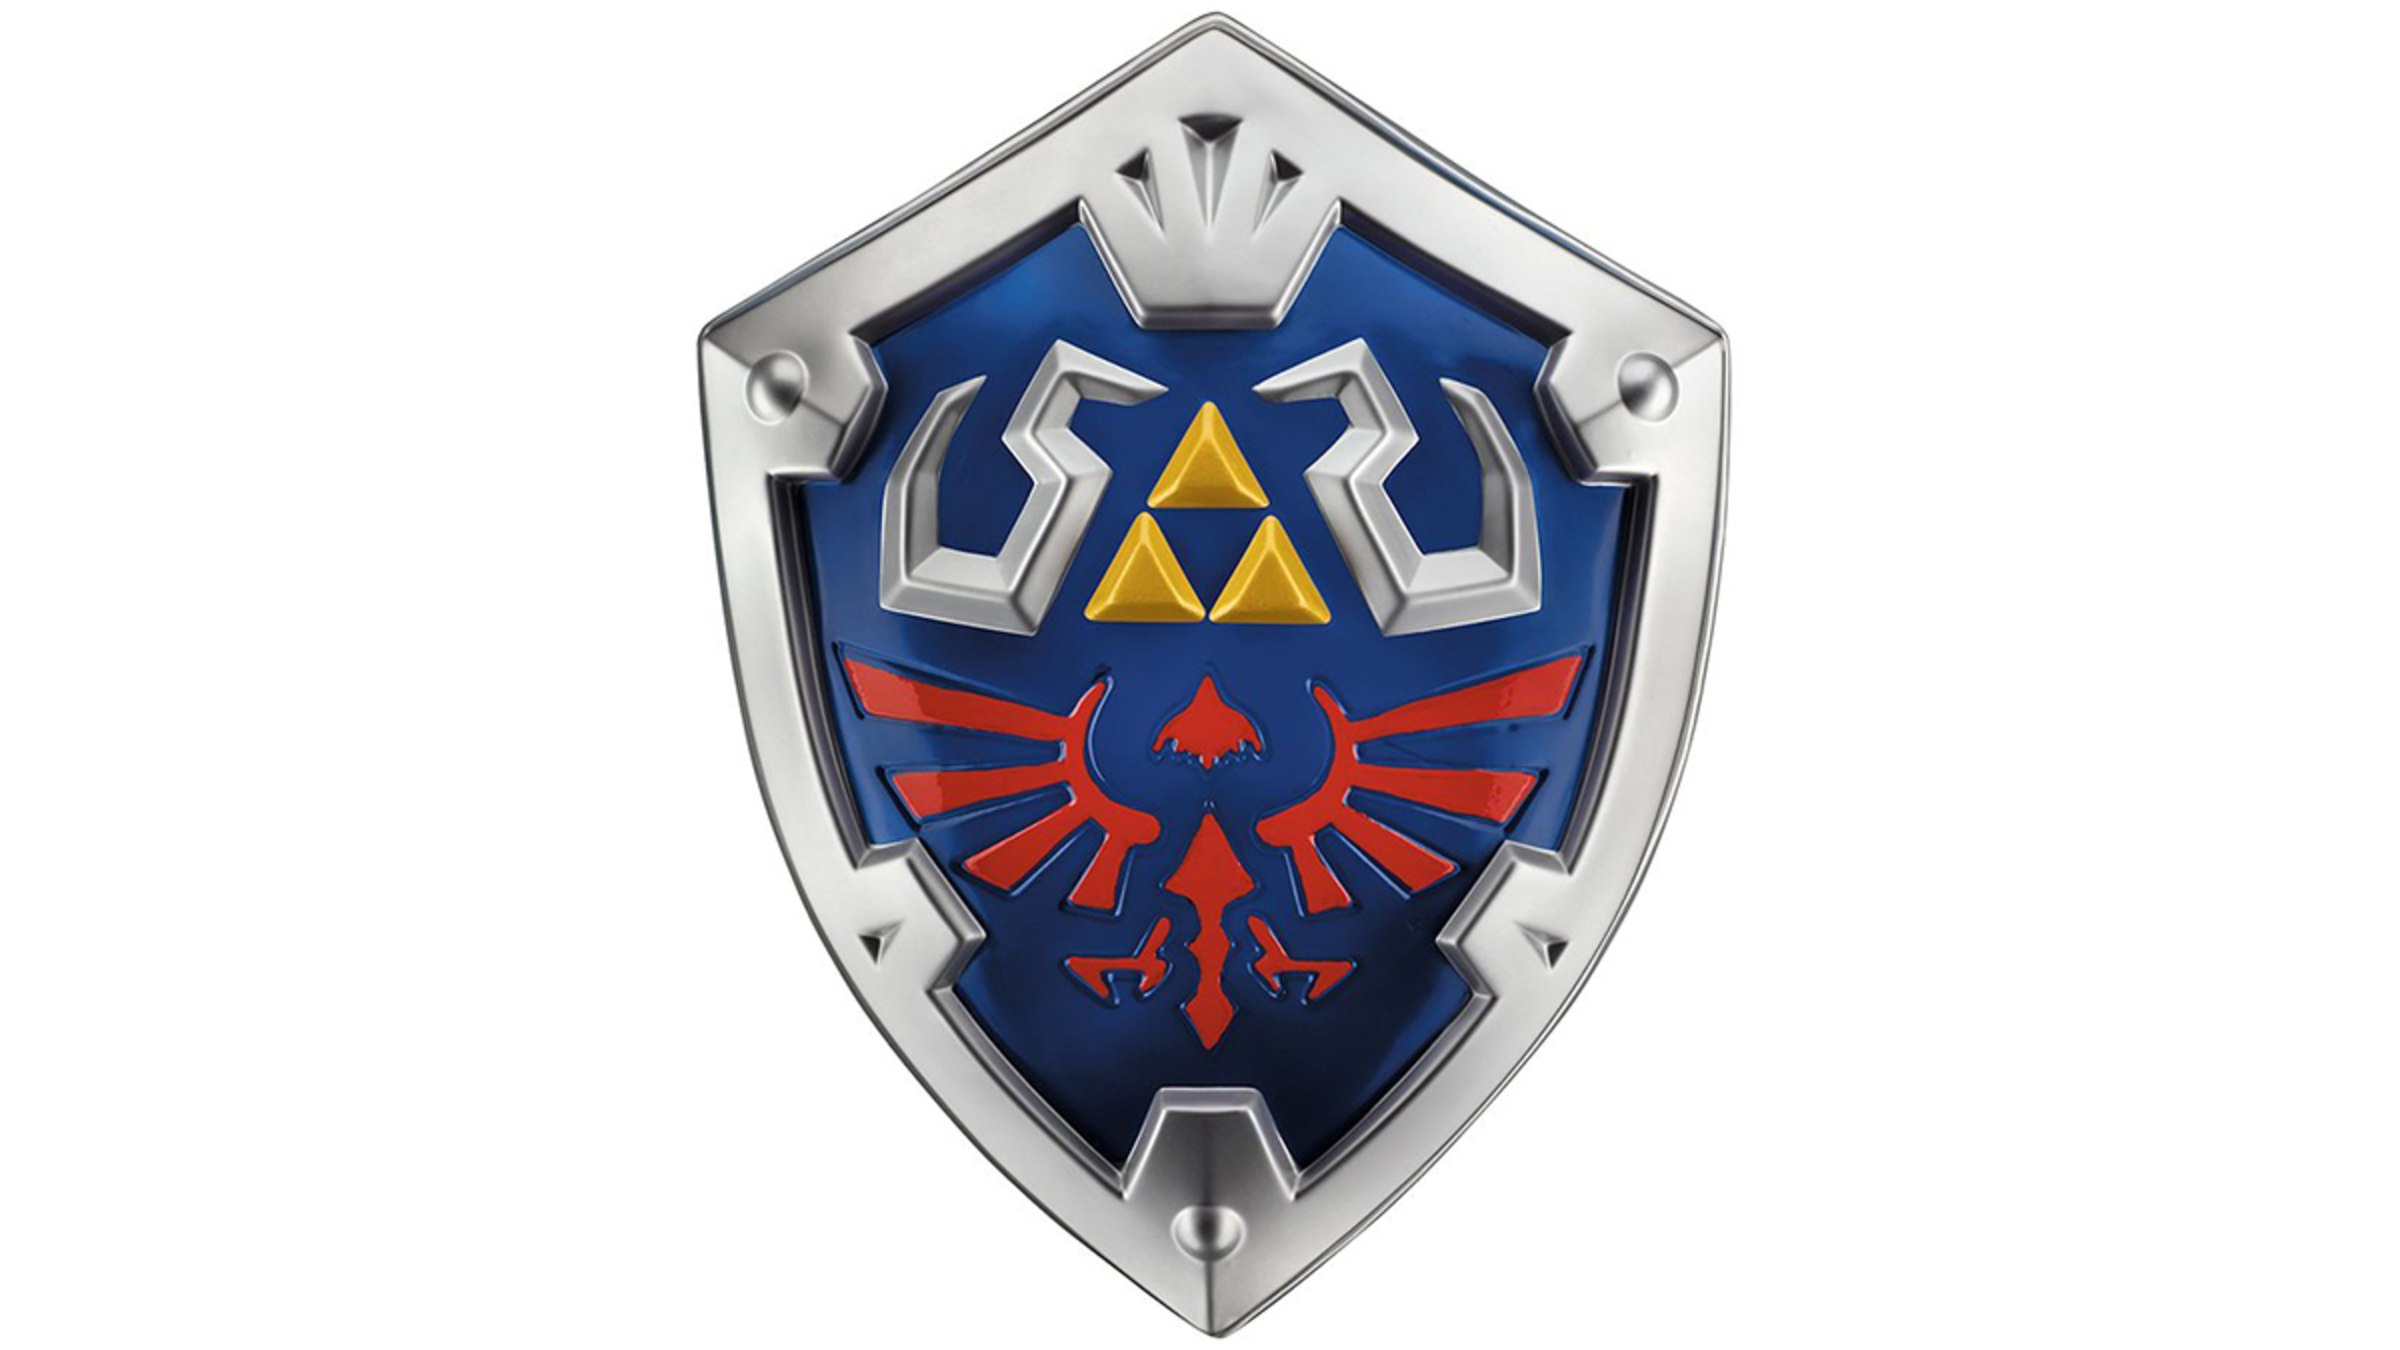 Hylian Shield - Legend of Zelda inspired – Wild 'n' Krazie Designs